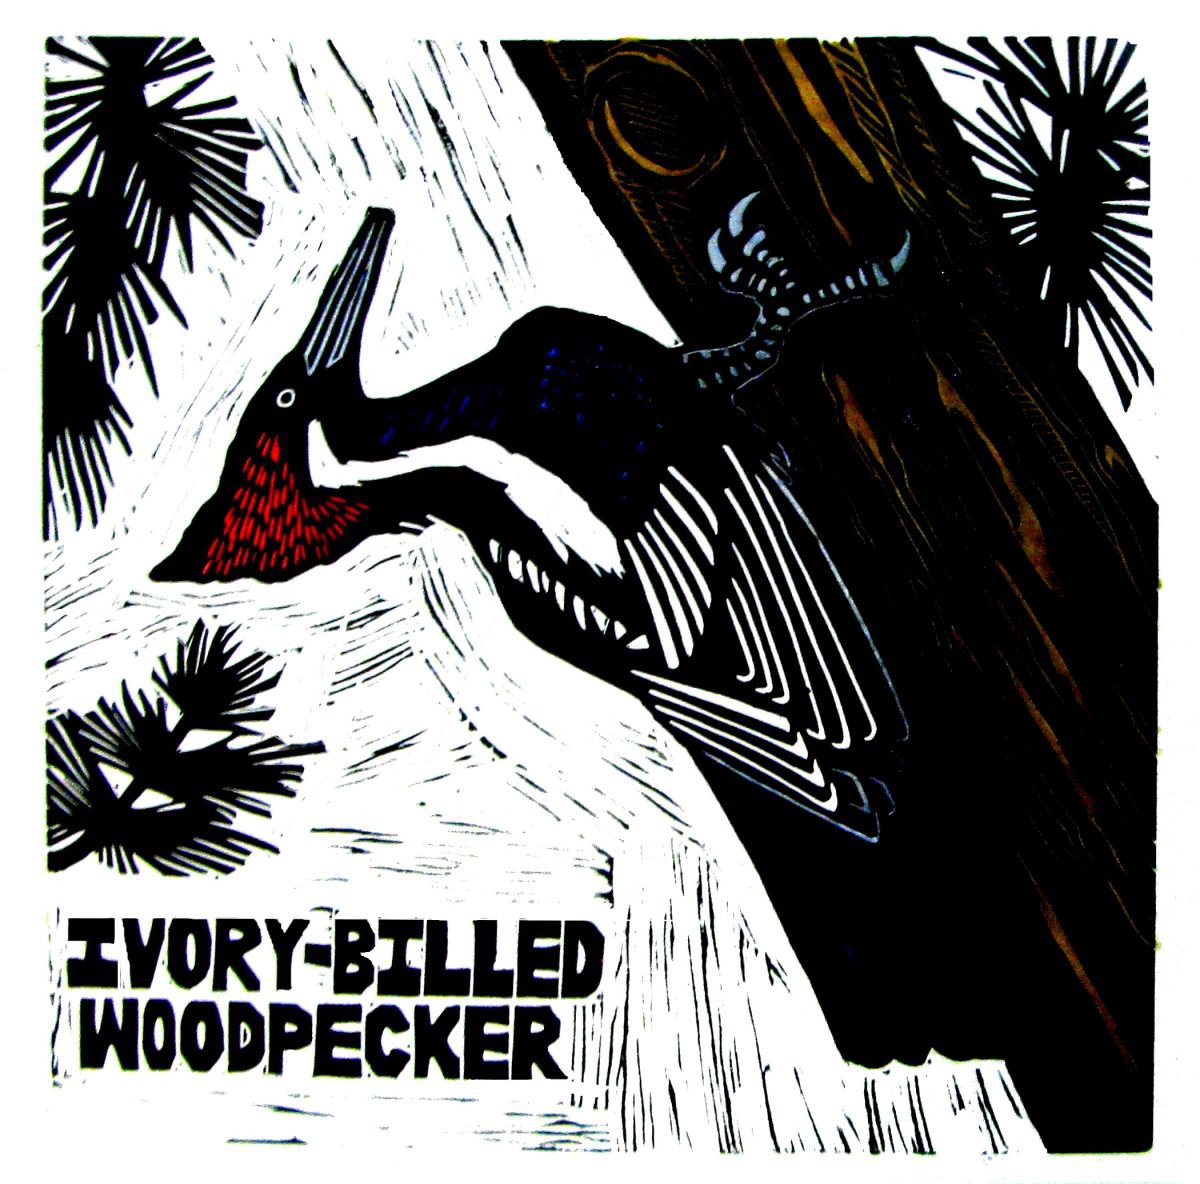 IVORY-BILLED WOODPECKER by Laurel Macdonald